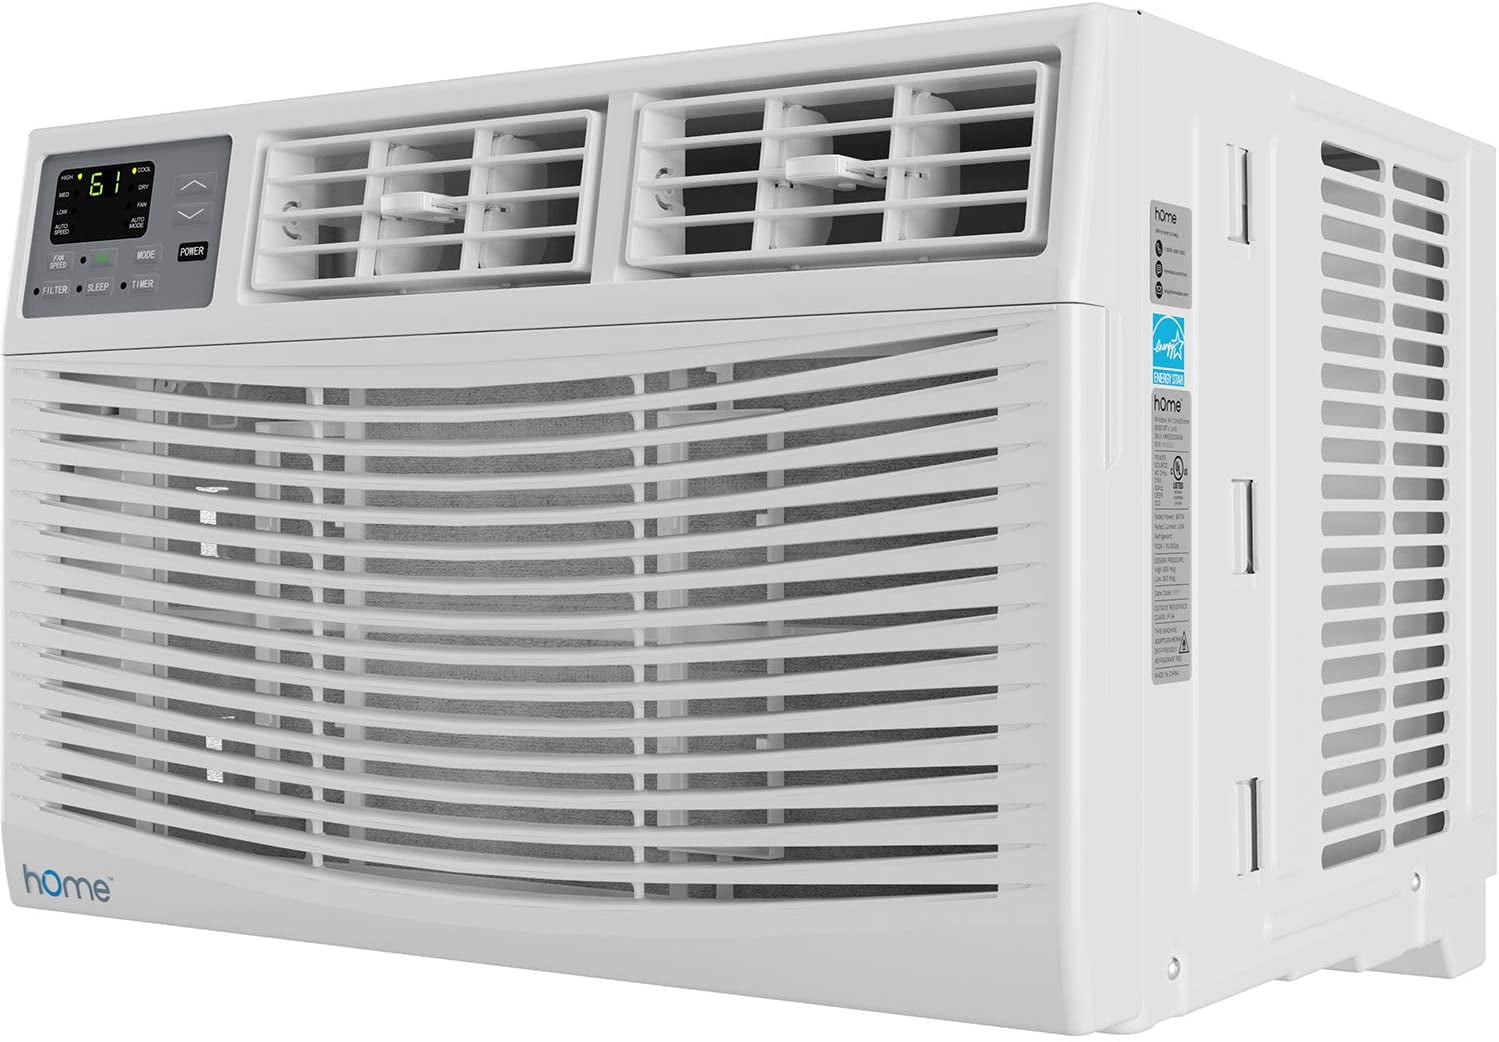 8000 btu air conditioner square footage